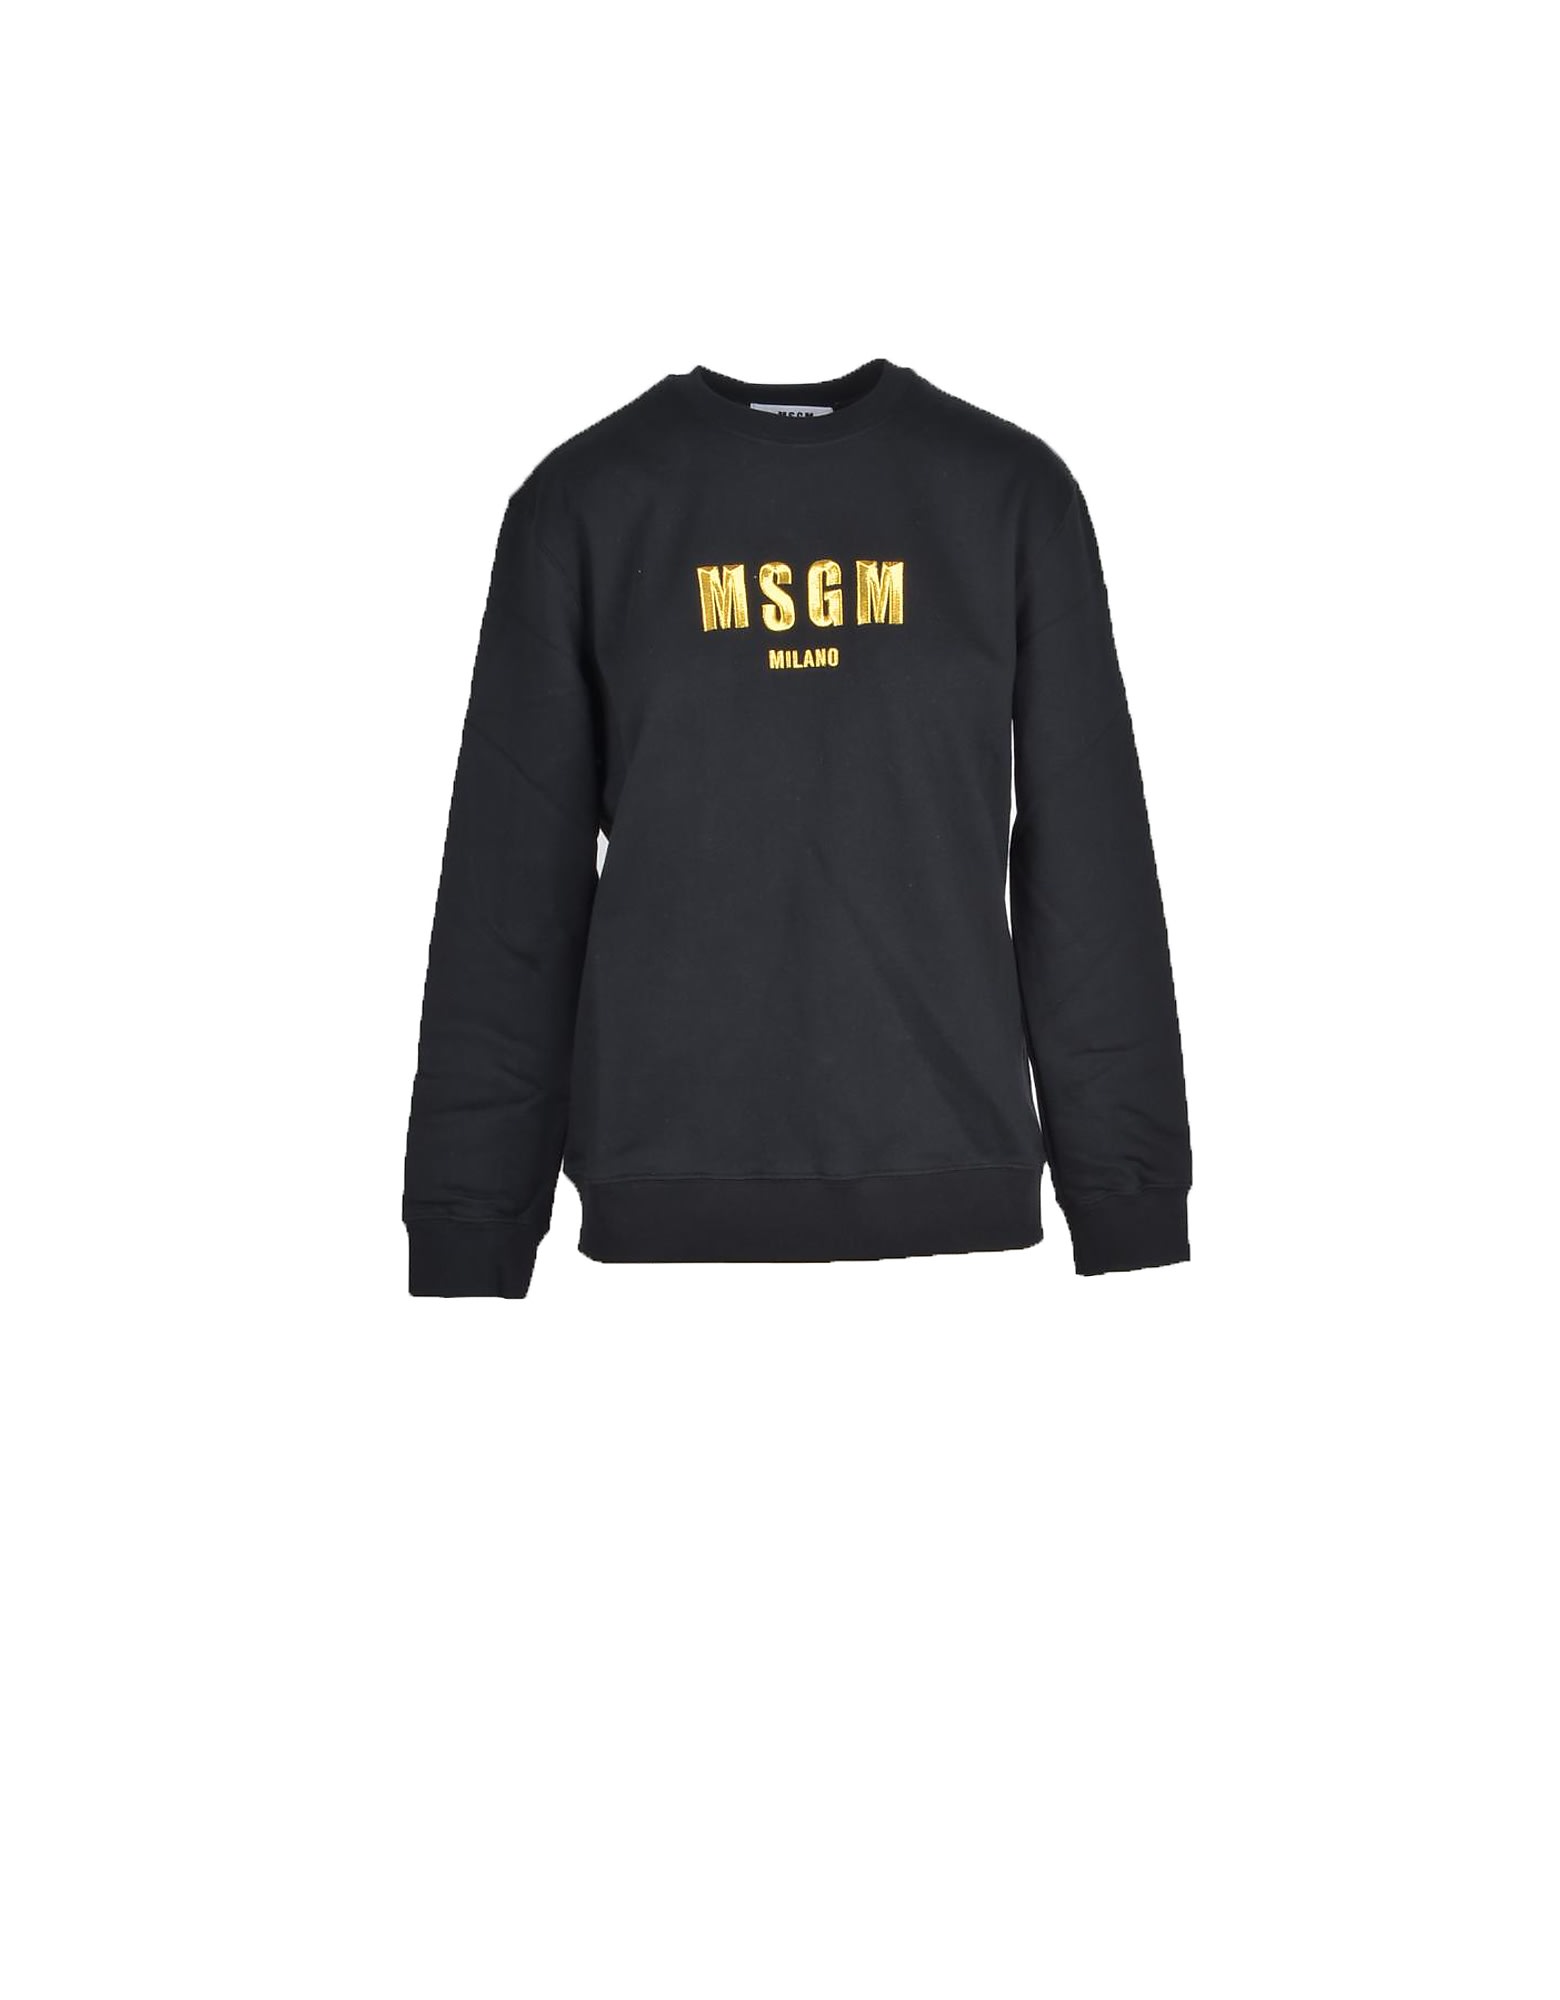 Msgm Womens Black Sweatshirt